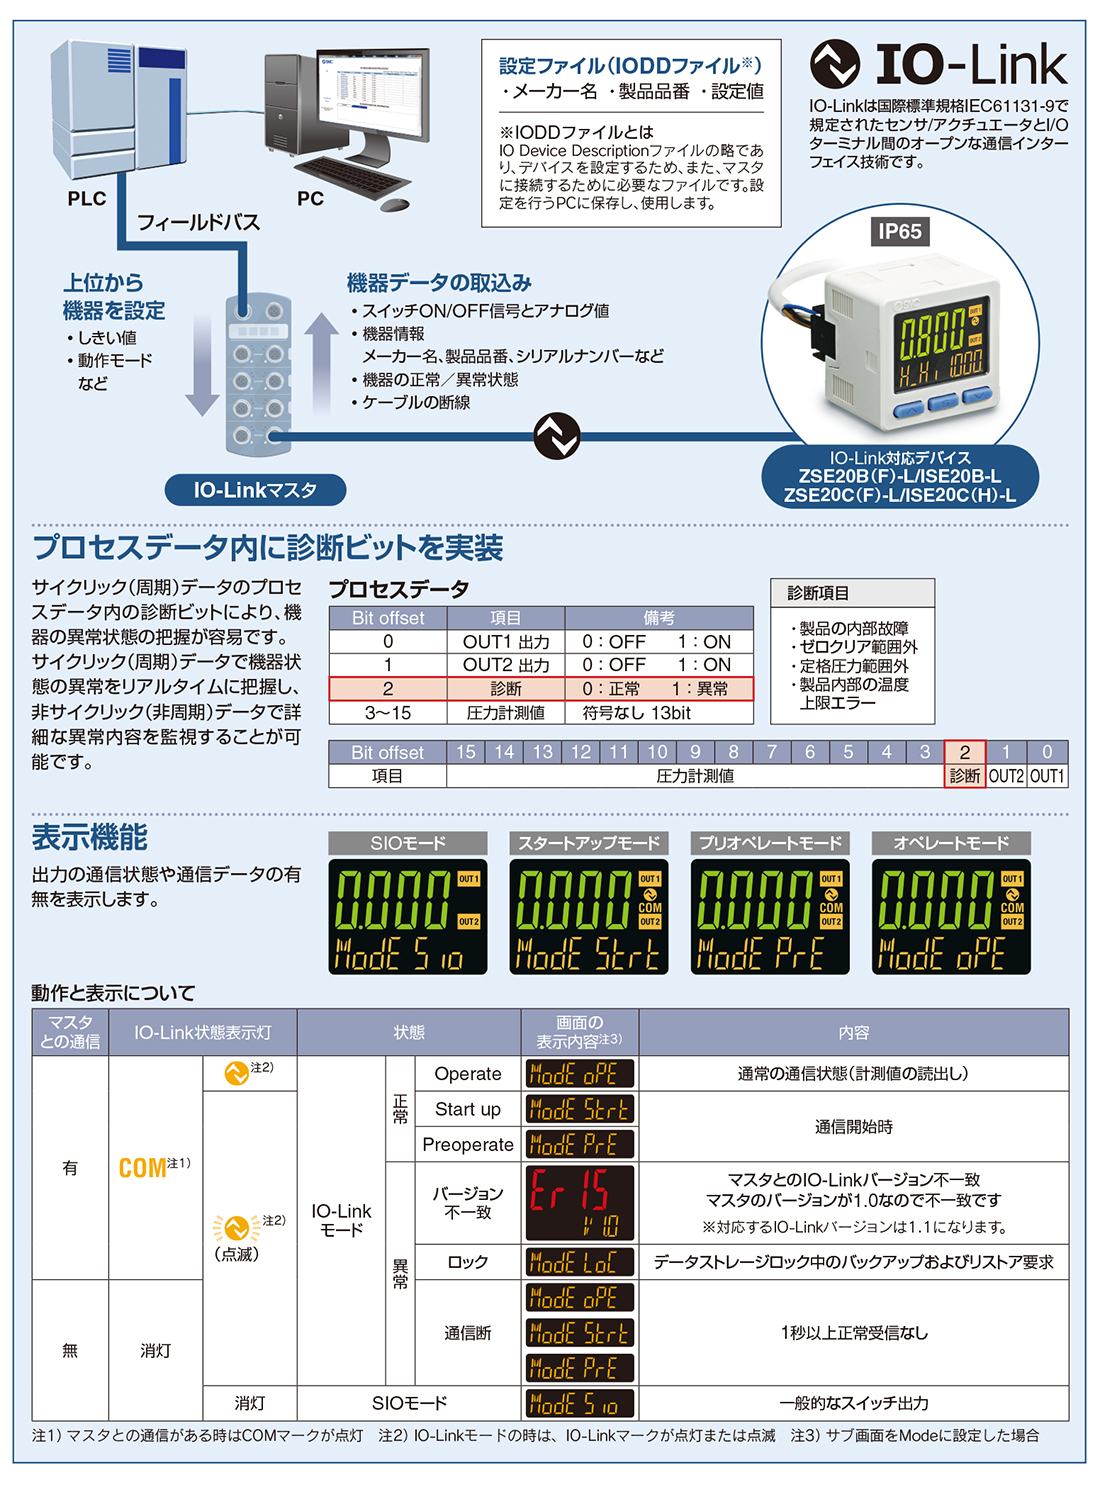 新製品情報：3画面高精度デジタル圧力スイッチ ZSE20□（F）/ISE20